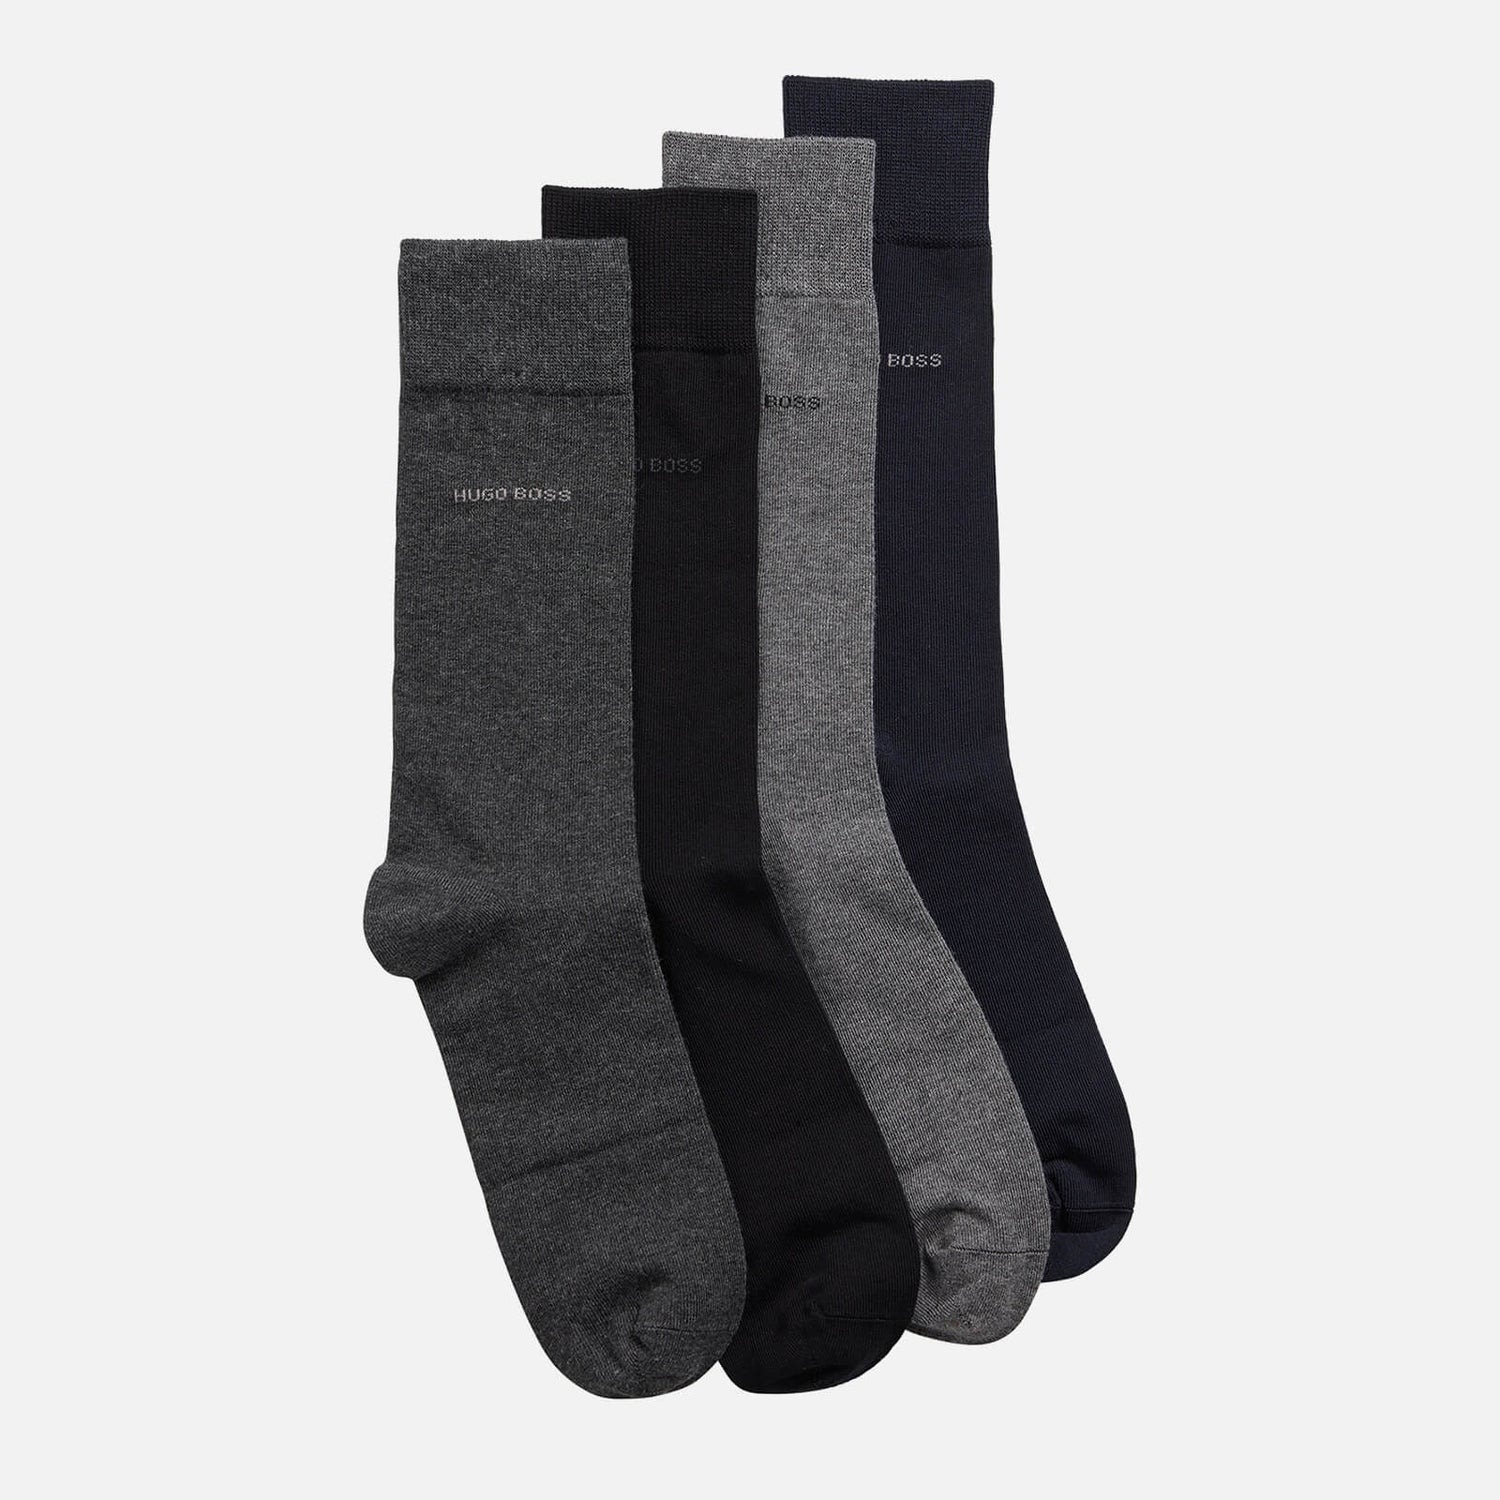 BOSS Bodywear Men's 4-Pack Gift Set Socks - Multi